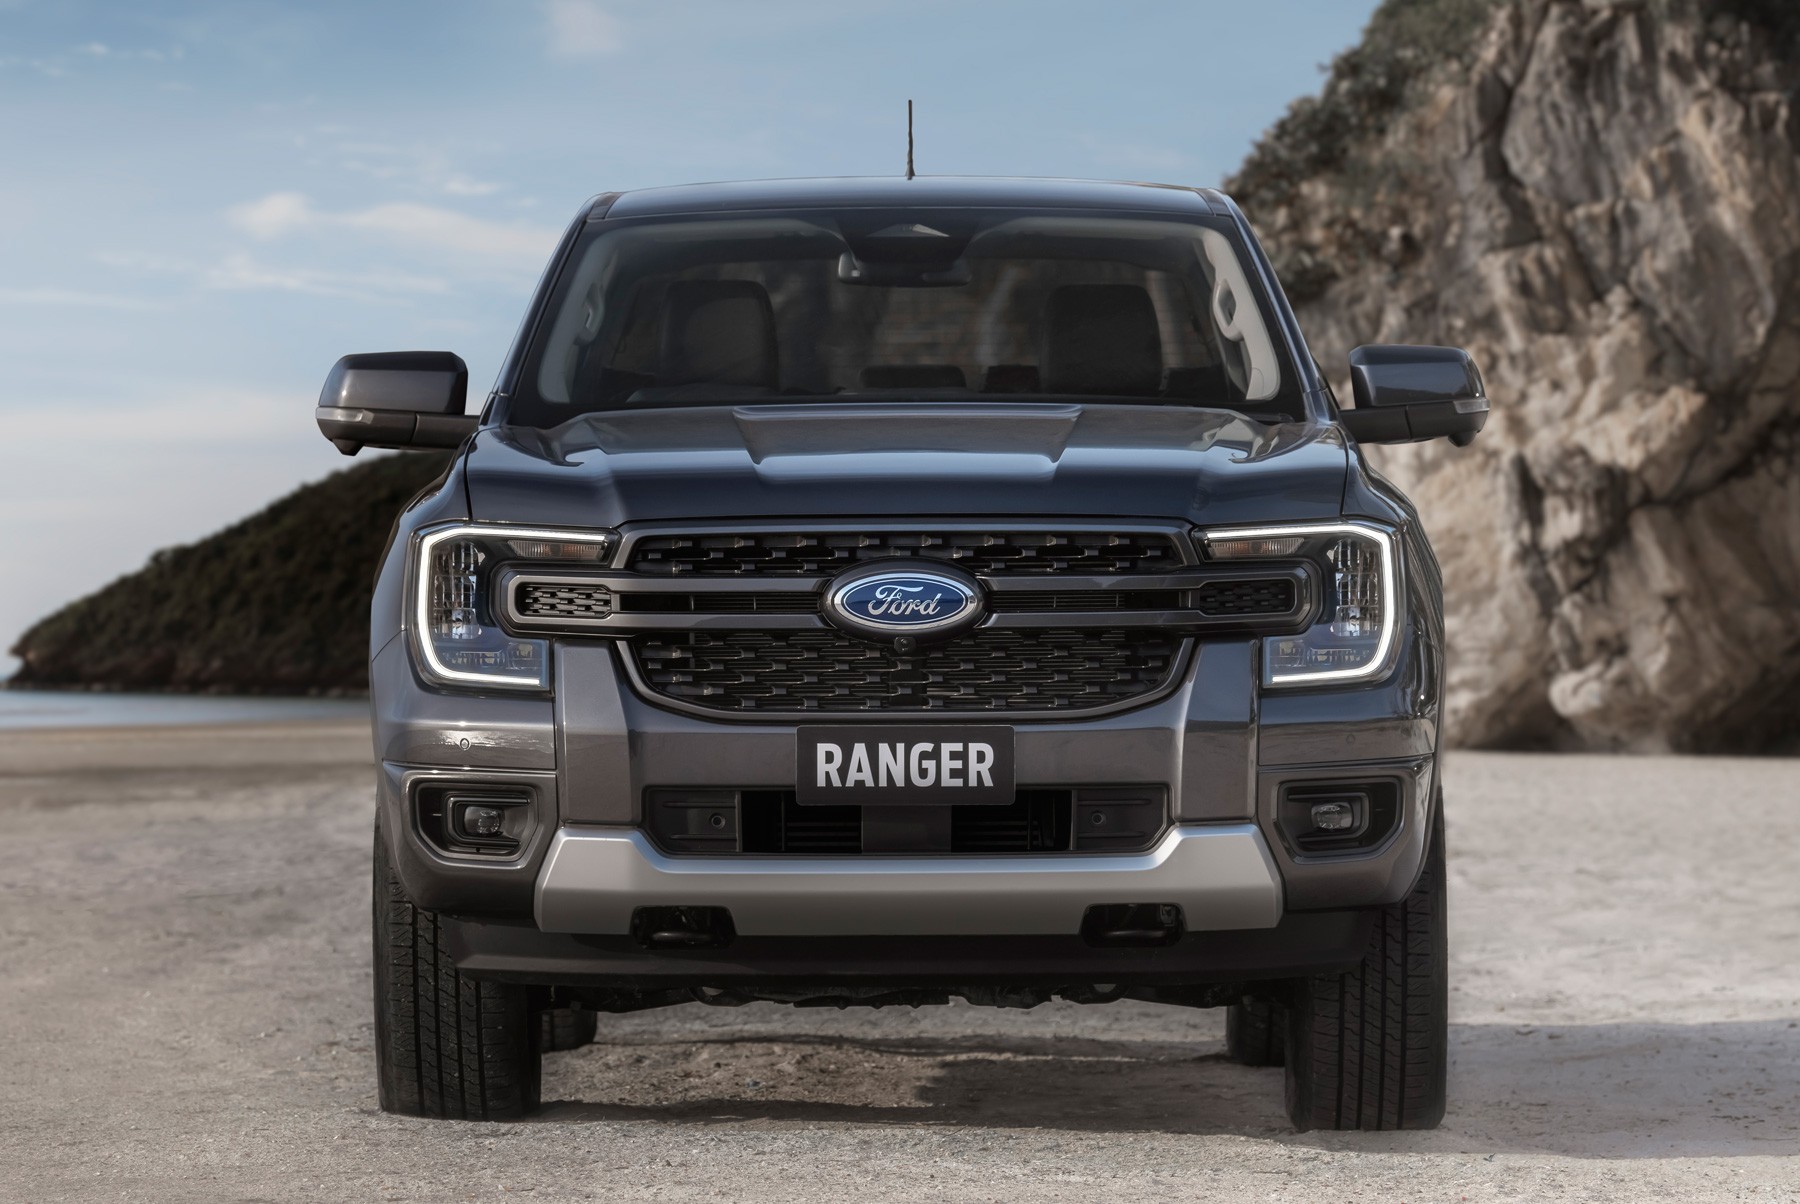 Ford Ranger Black será relançada na linha 2025 da caminhonete; veja detalhes